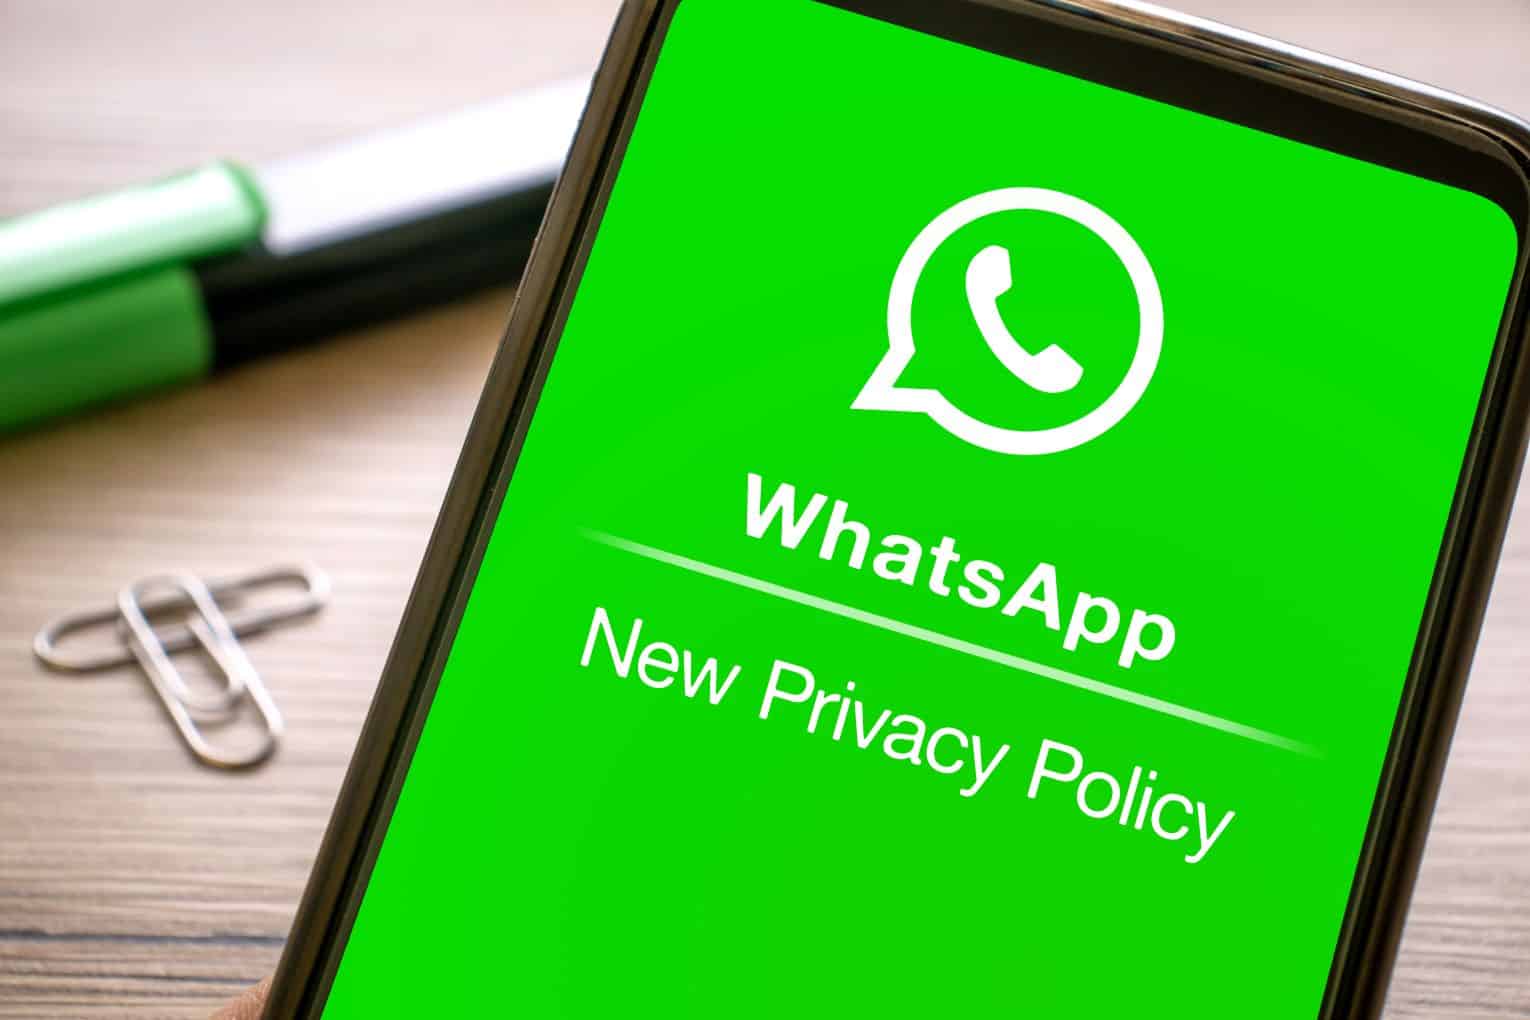 Entenda o que sobrou da polêmica sobre a alteração na política de privacidade do Whatsapp